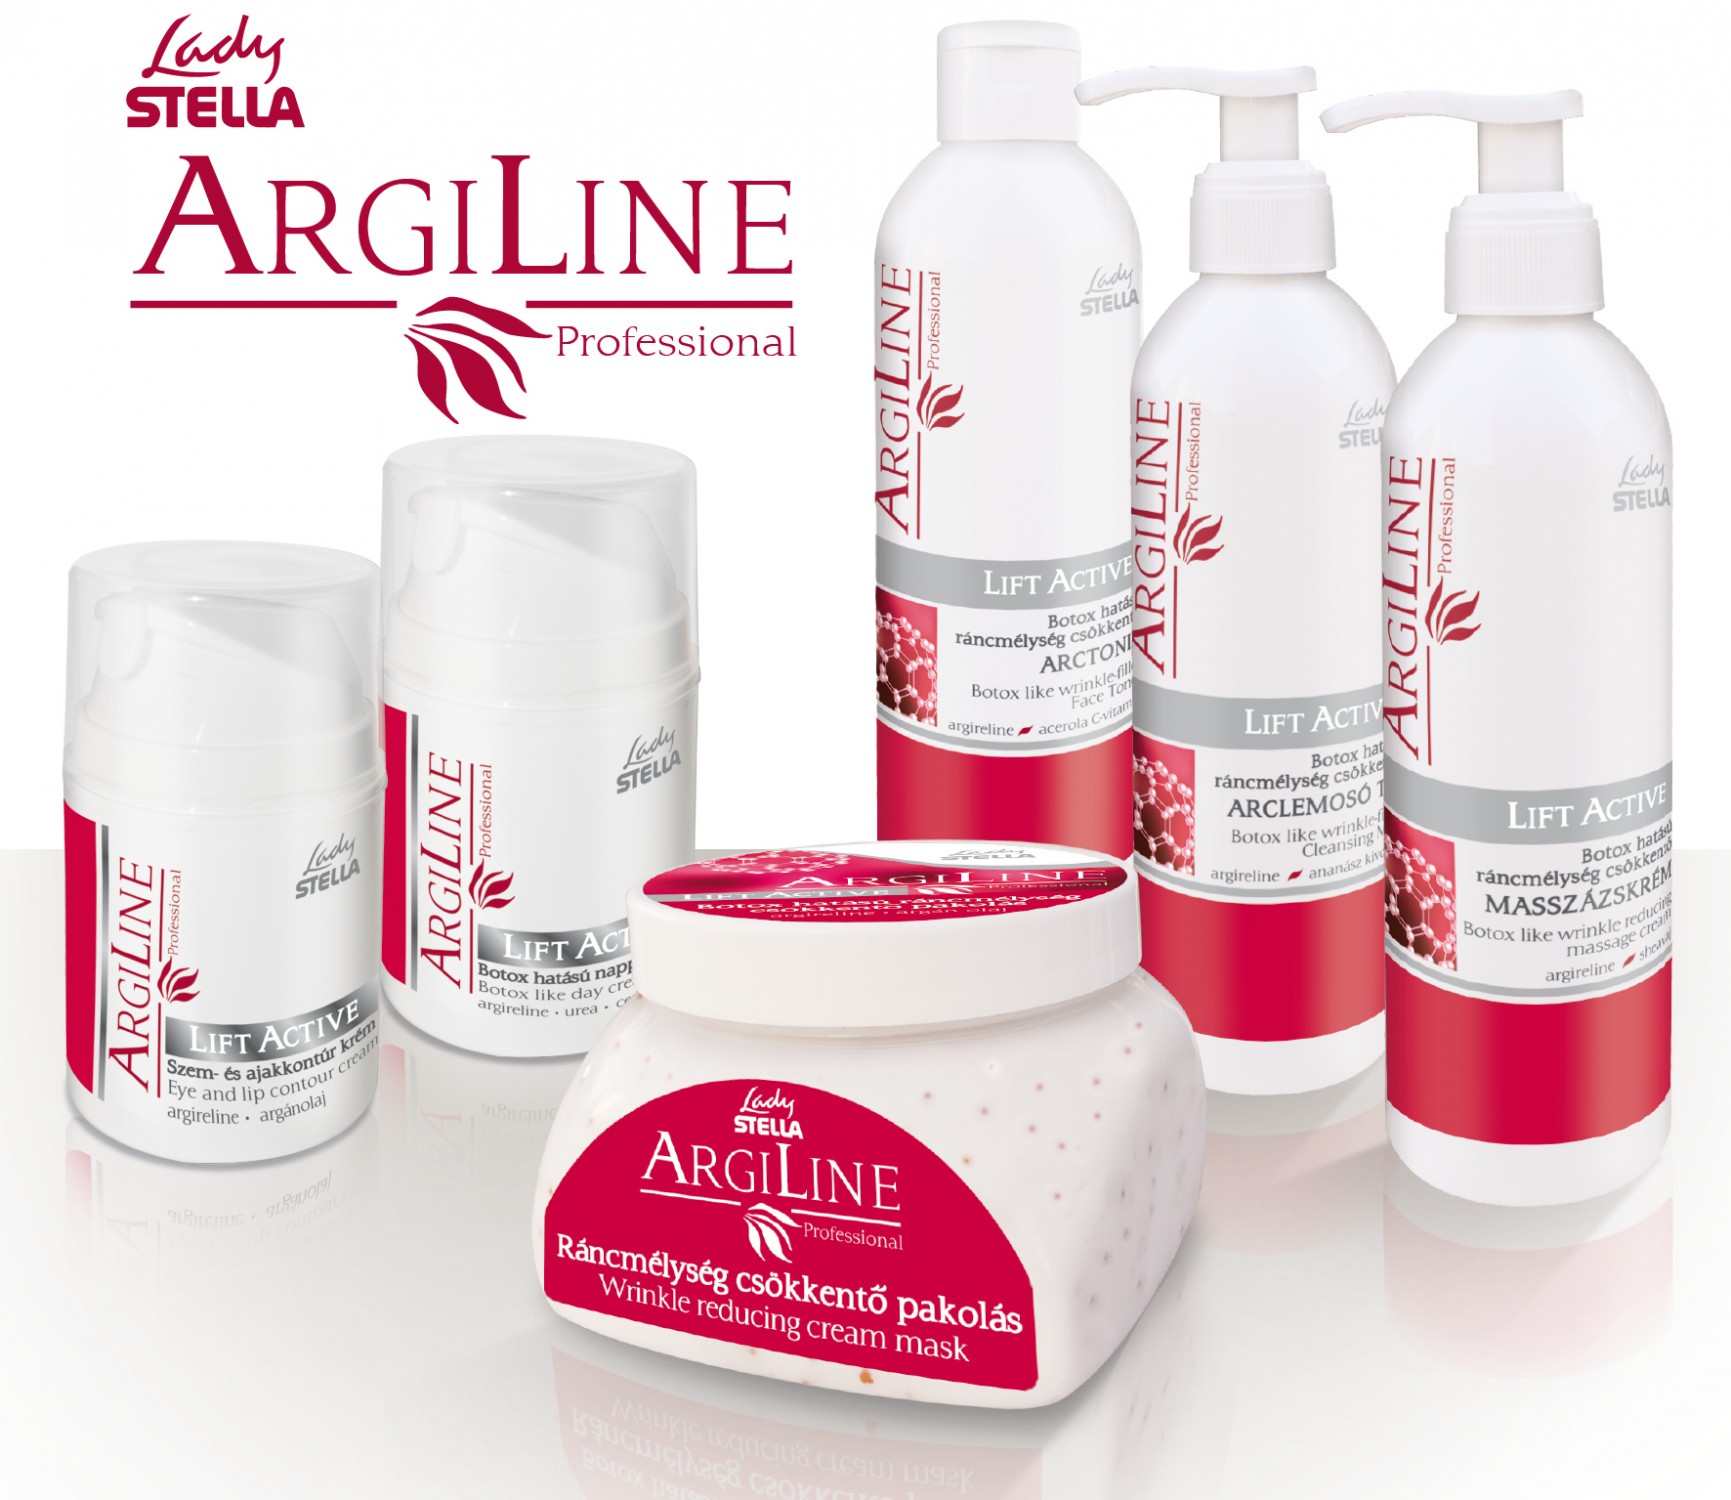 Argiline lift active kozmeticke prípravky